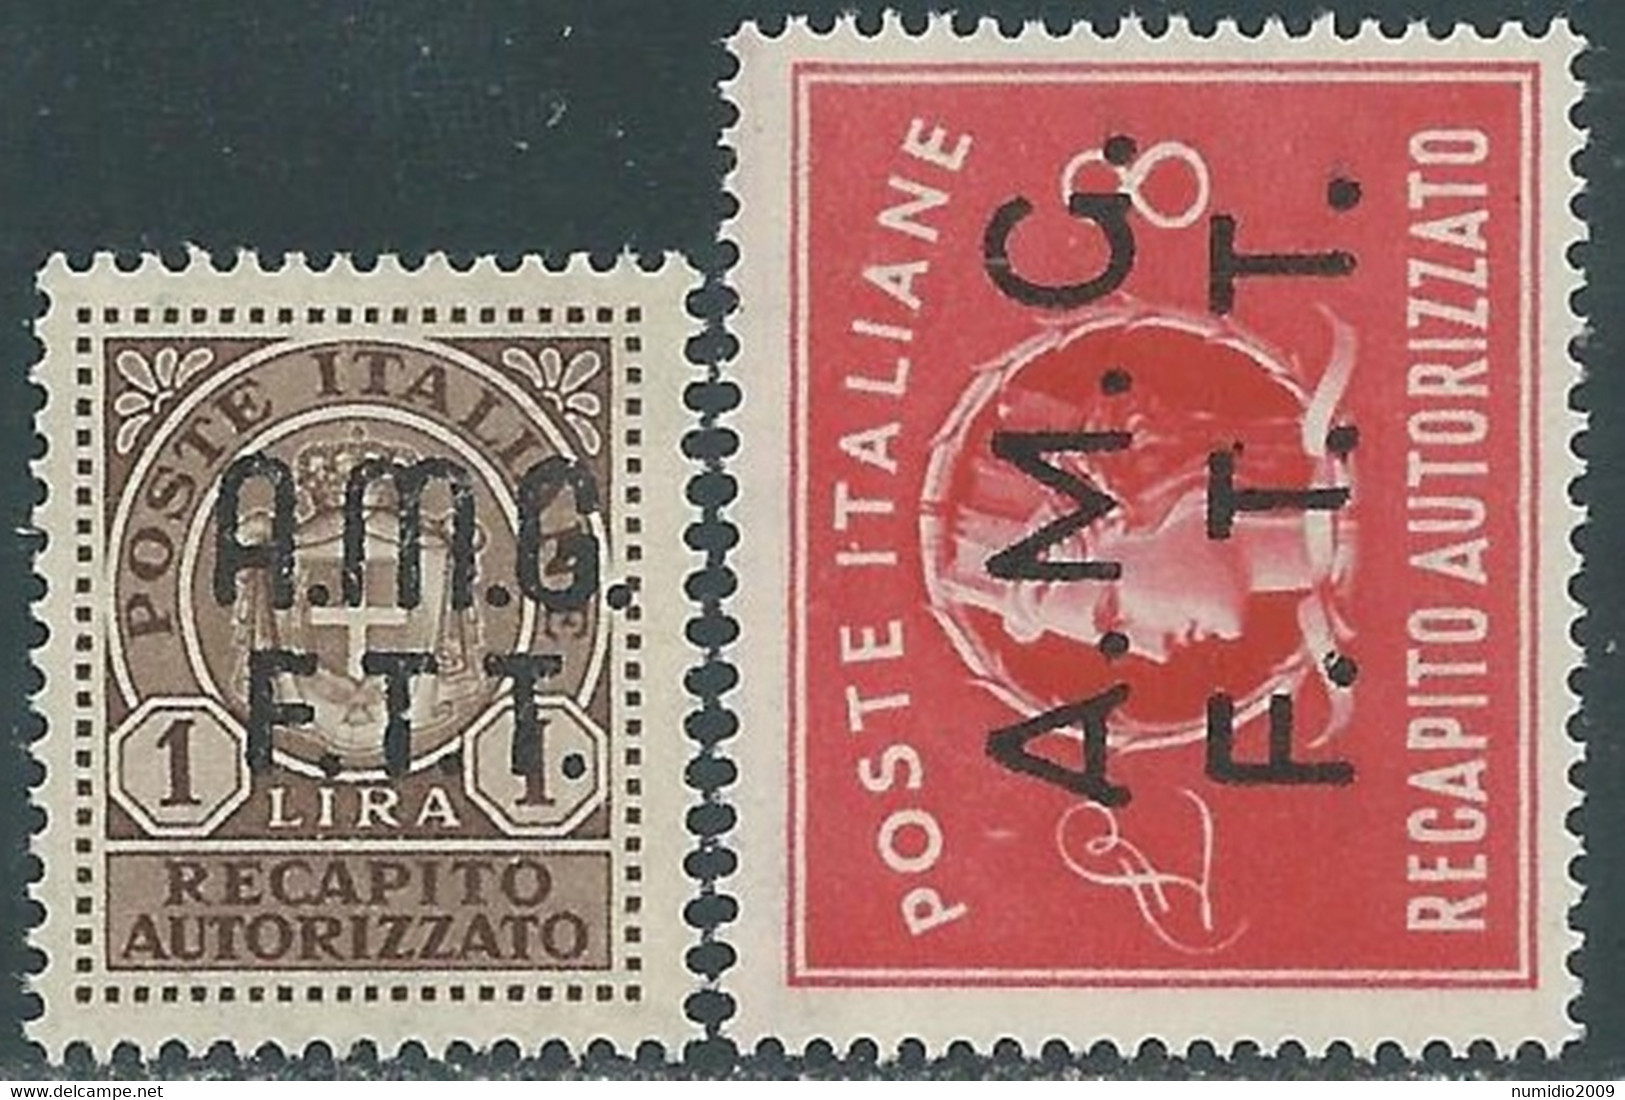 1947 TRIESTE A RECAPITO AUTORIZZATO 2 VALORI MNH ** - RE8-8 - Express Mail